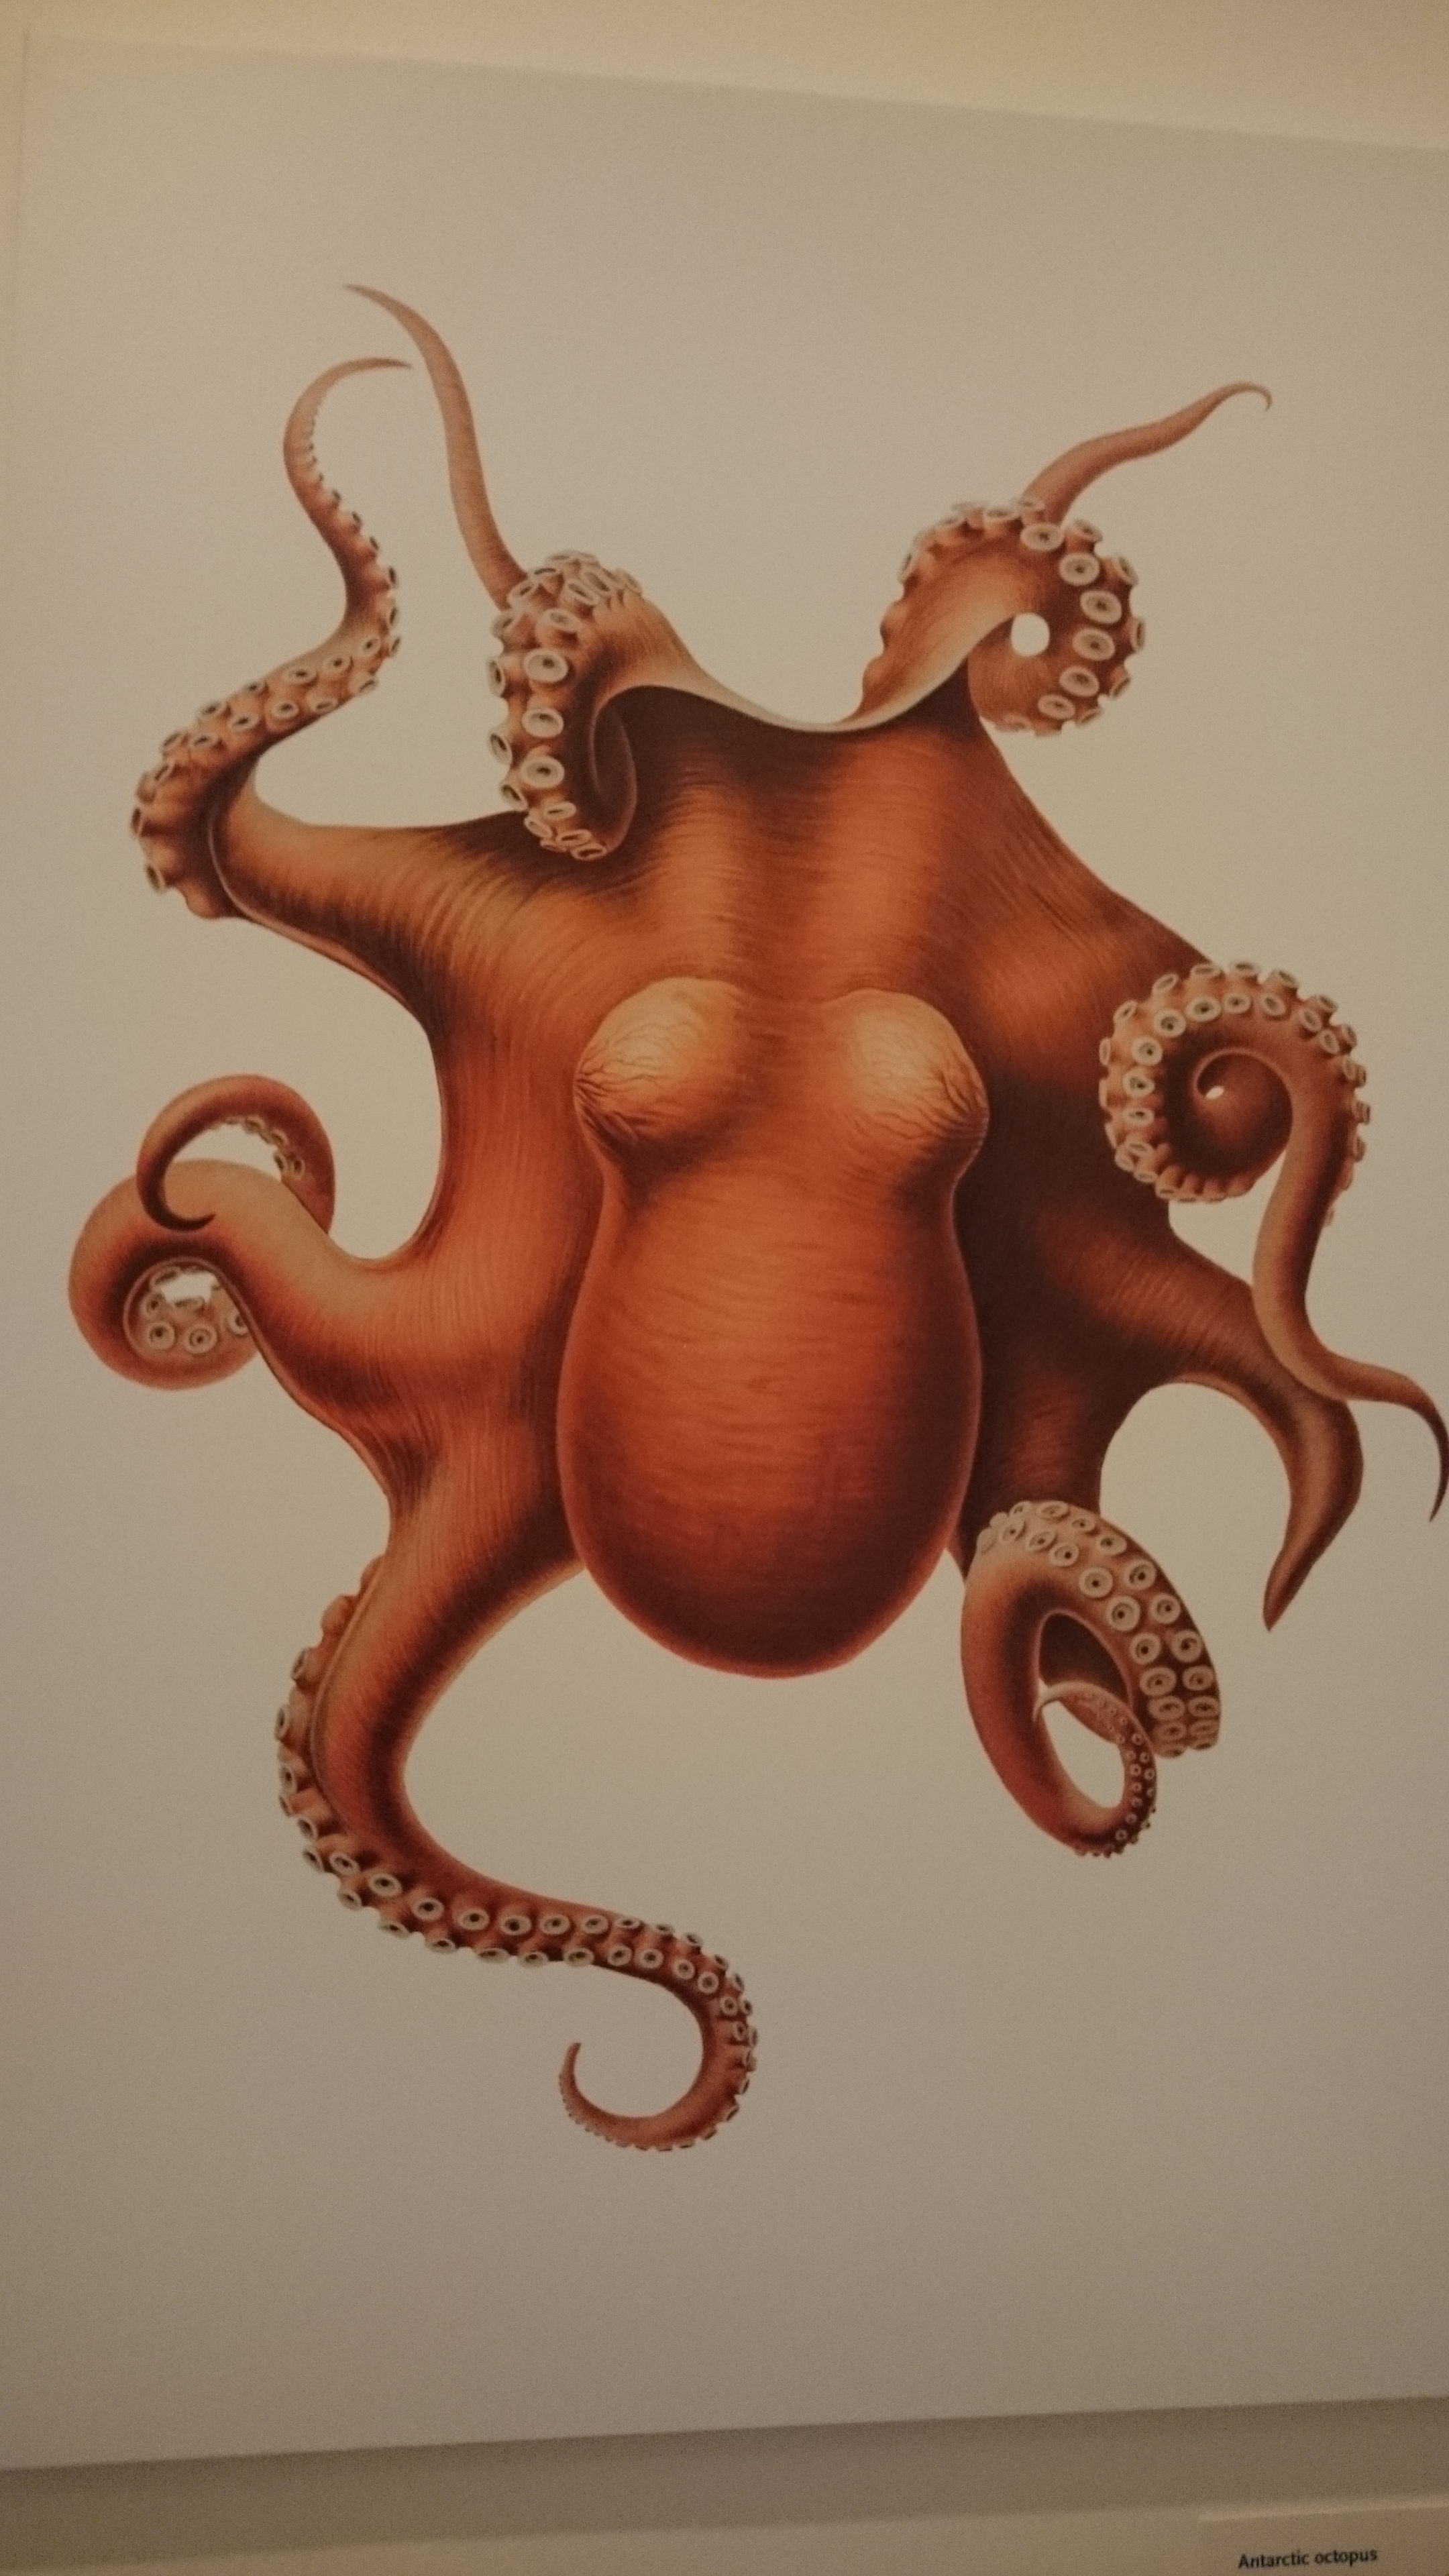 Octopus from Opulent Oceans. So lovely